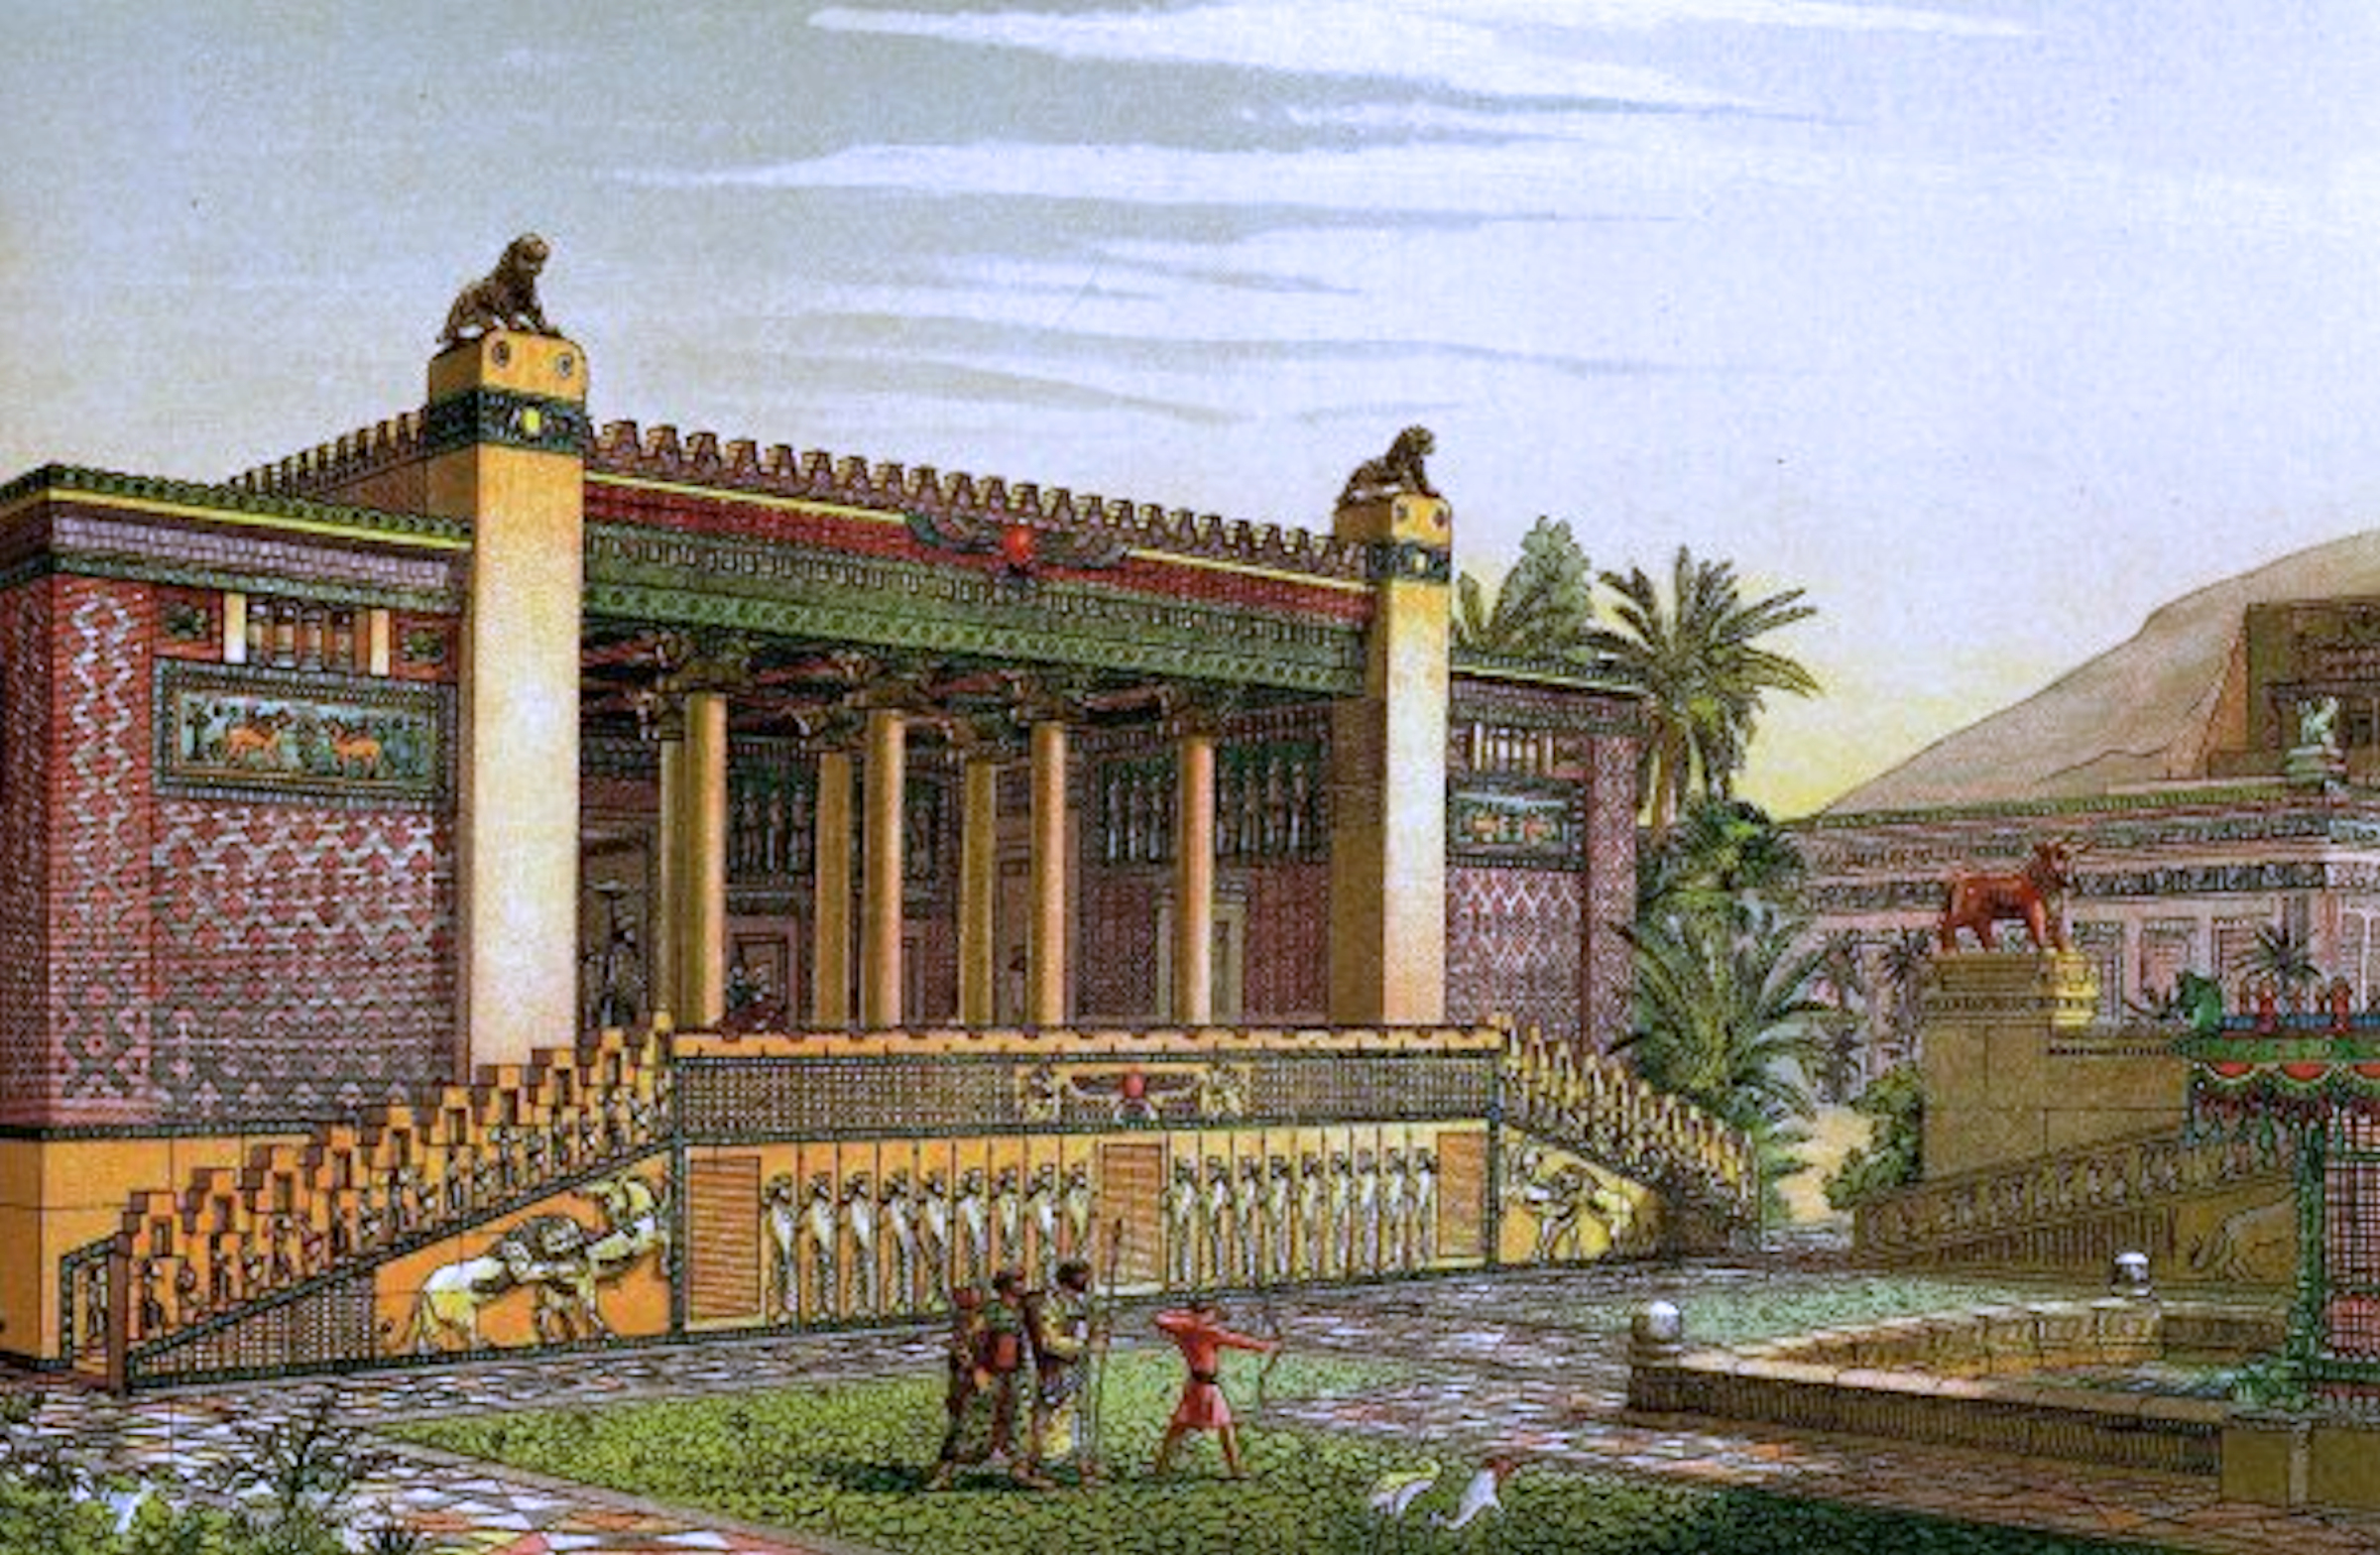 En kunstners fortolkning af Persepolis, Persiens store hovedstad.